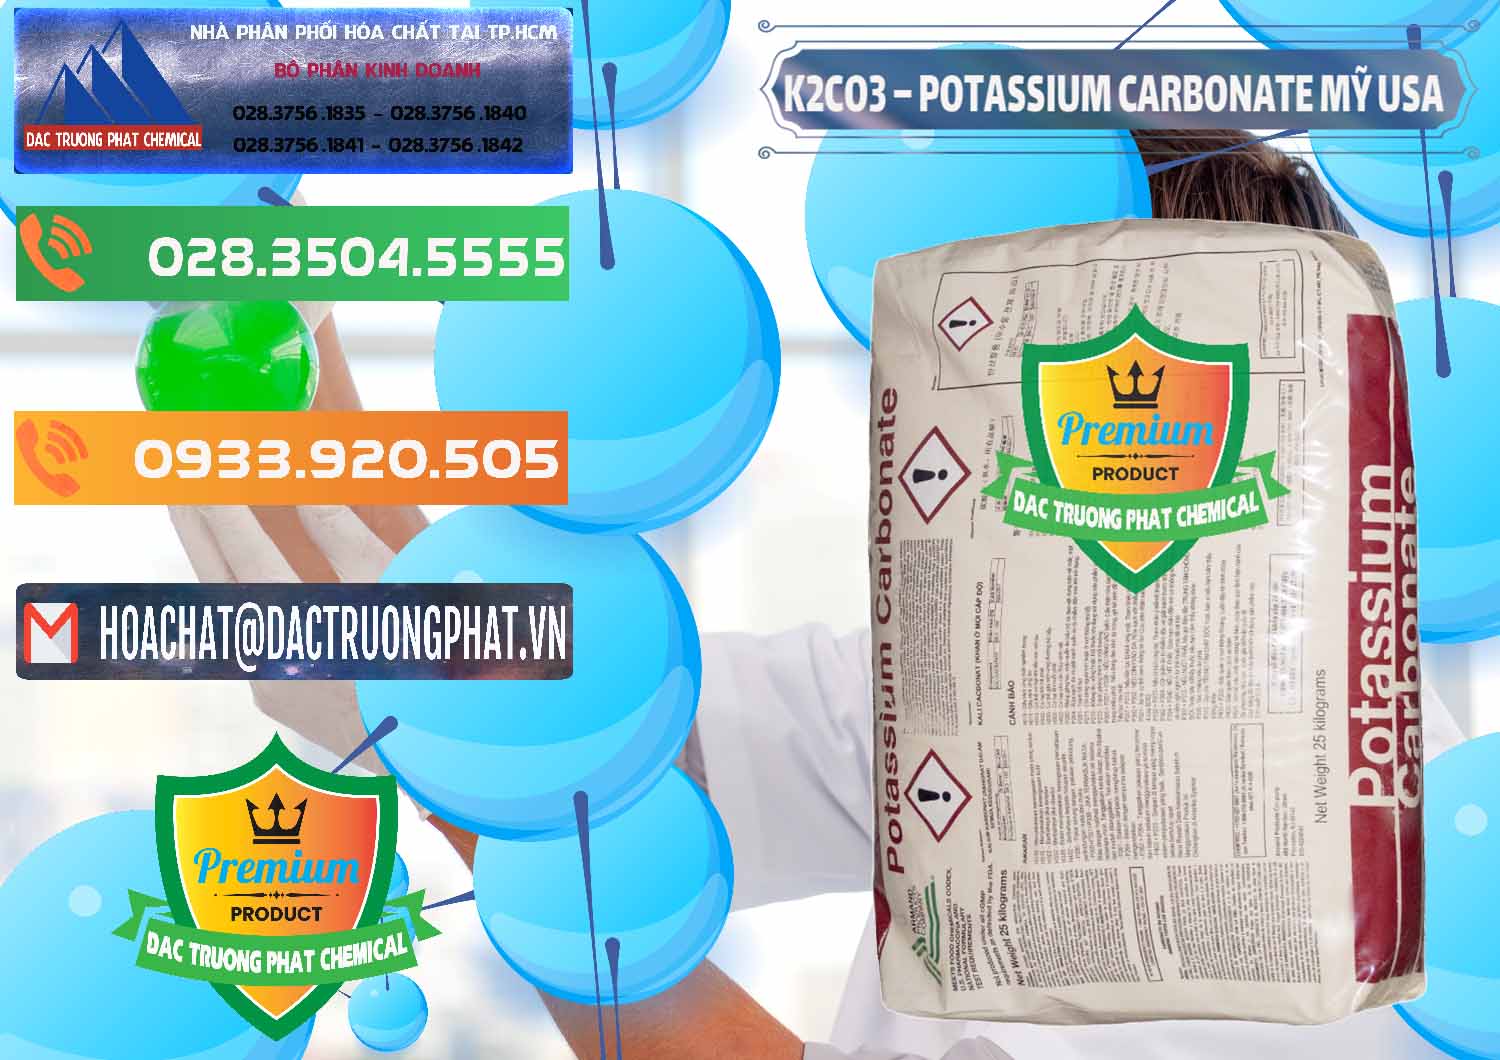 Nơi chuyên bán - phân phối K2Co3 – Potassium Carbonate Mỹ USA - 0082 - Nơi cung cấp và kinh doanh hóa chất tại TP.HCM - hoachatxulynuoc.com.vn